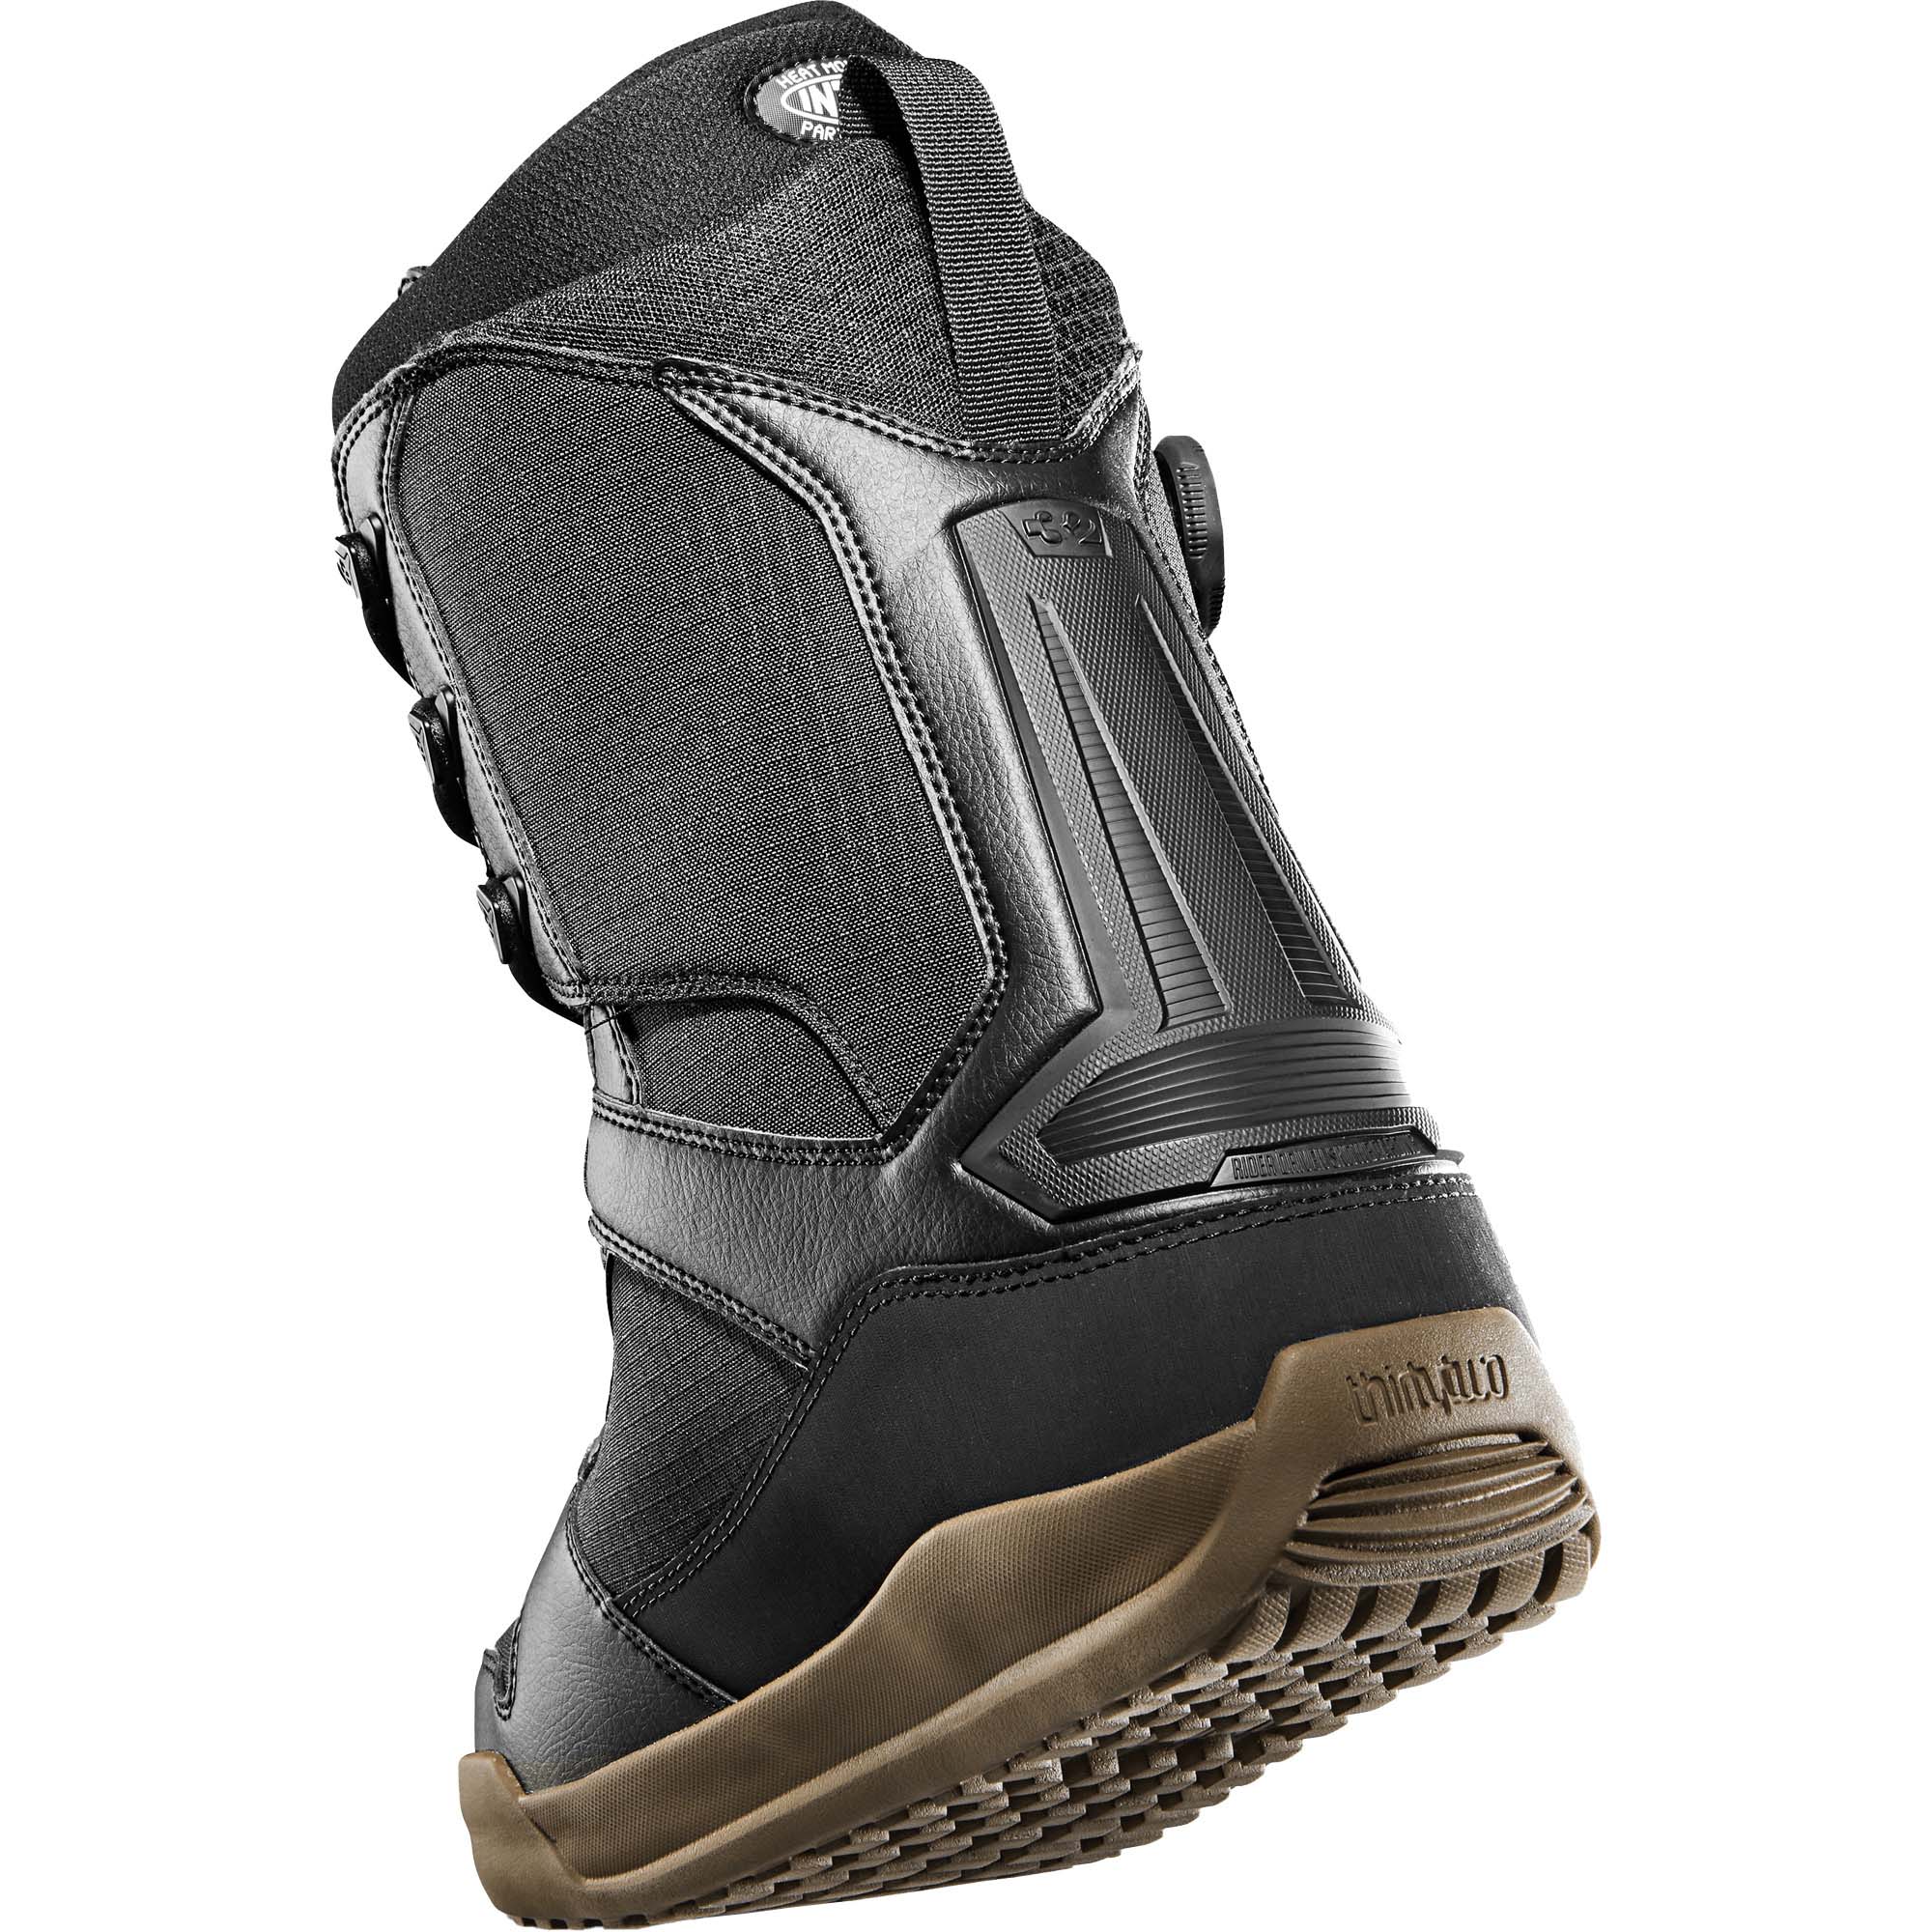 thirtytwo Diesel Hybrid Snowboard Boots